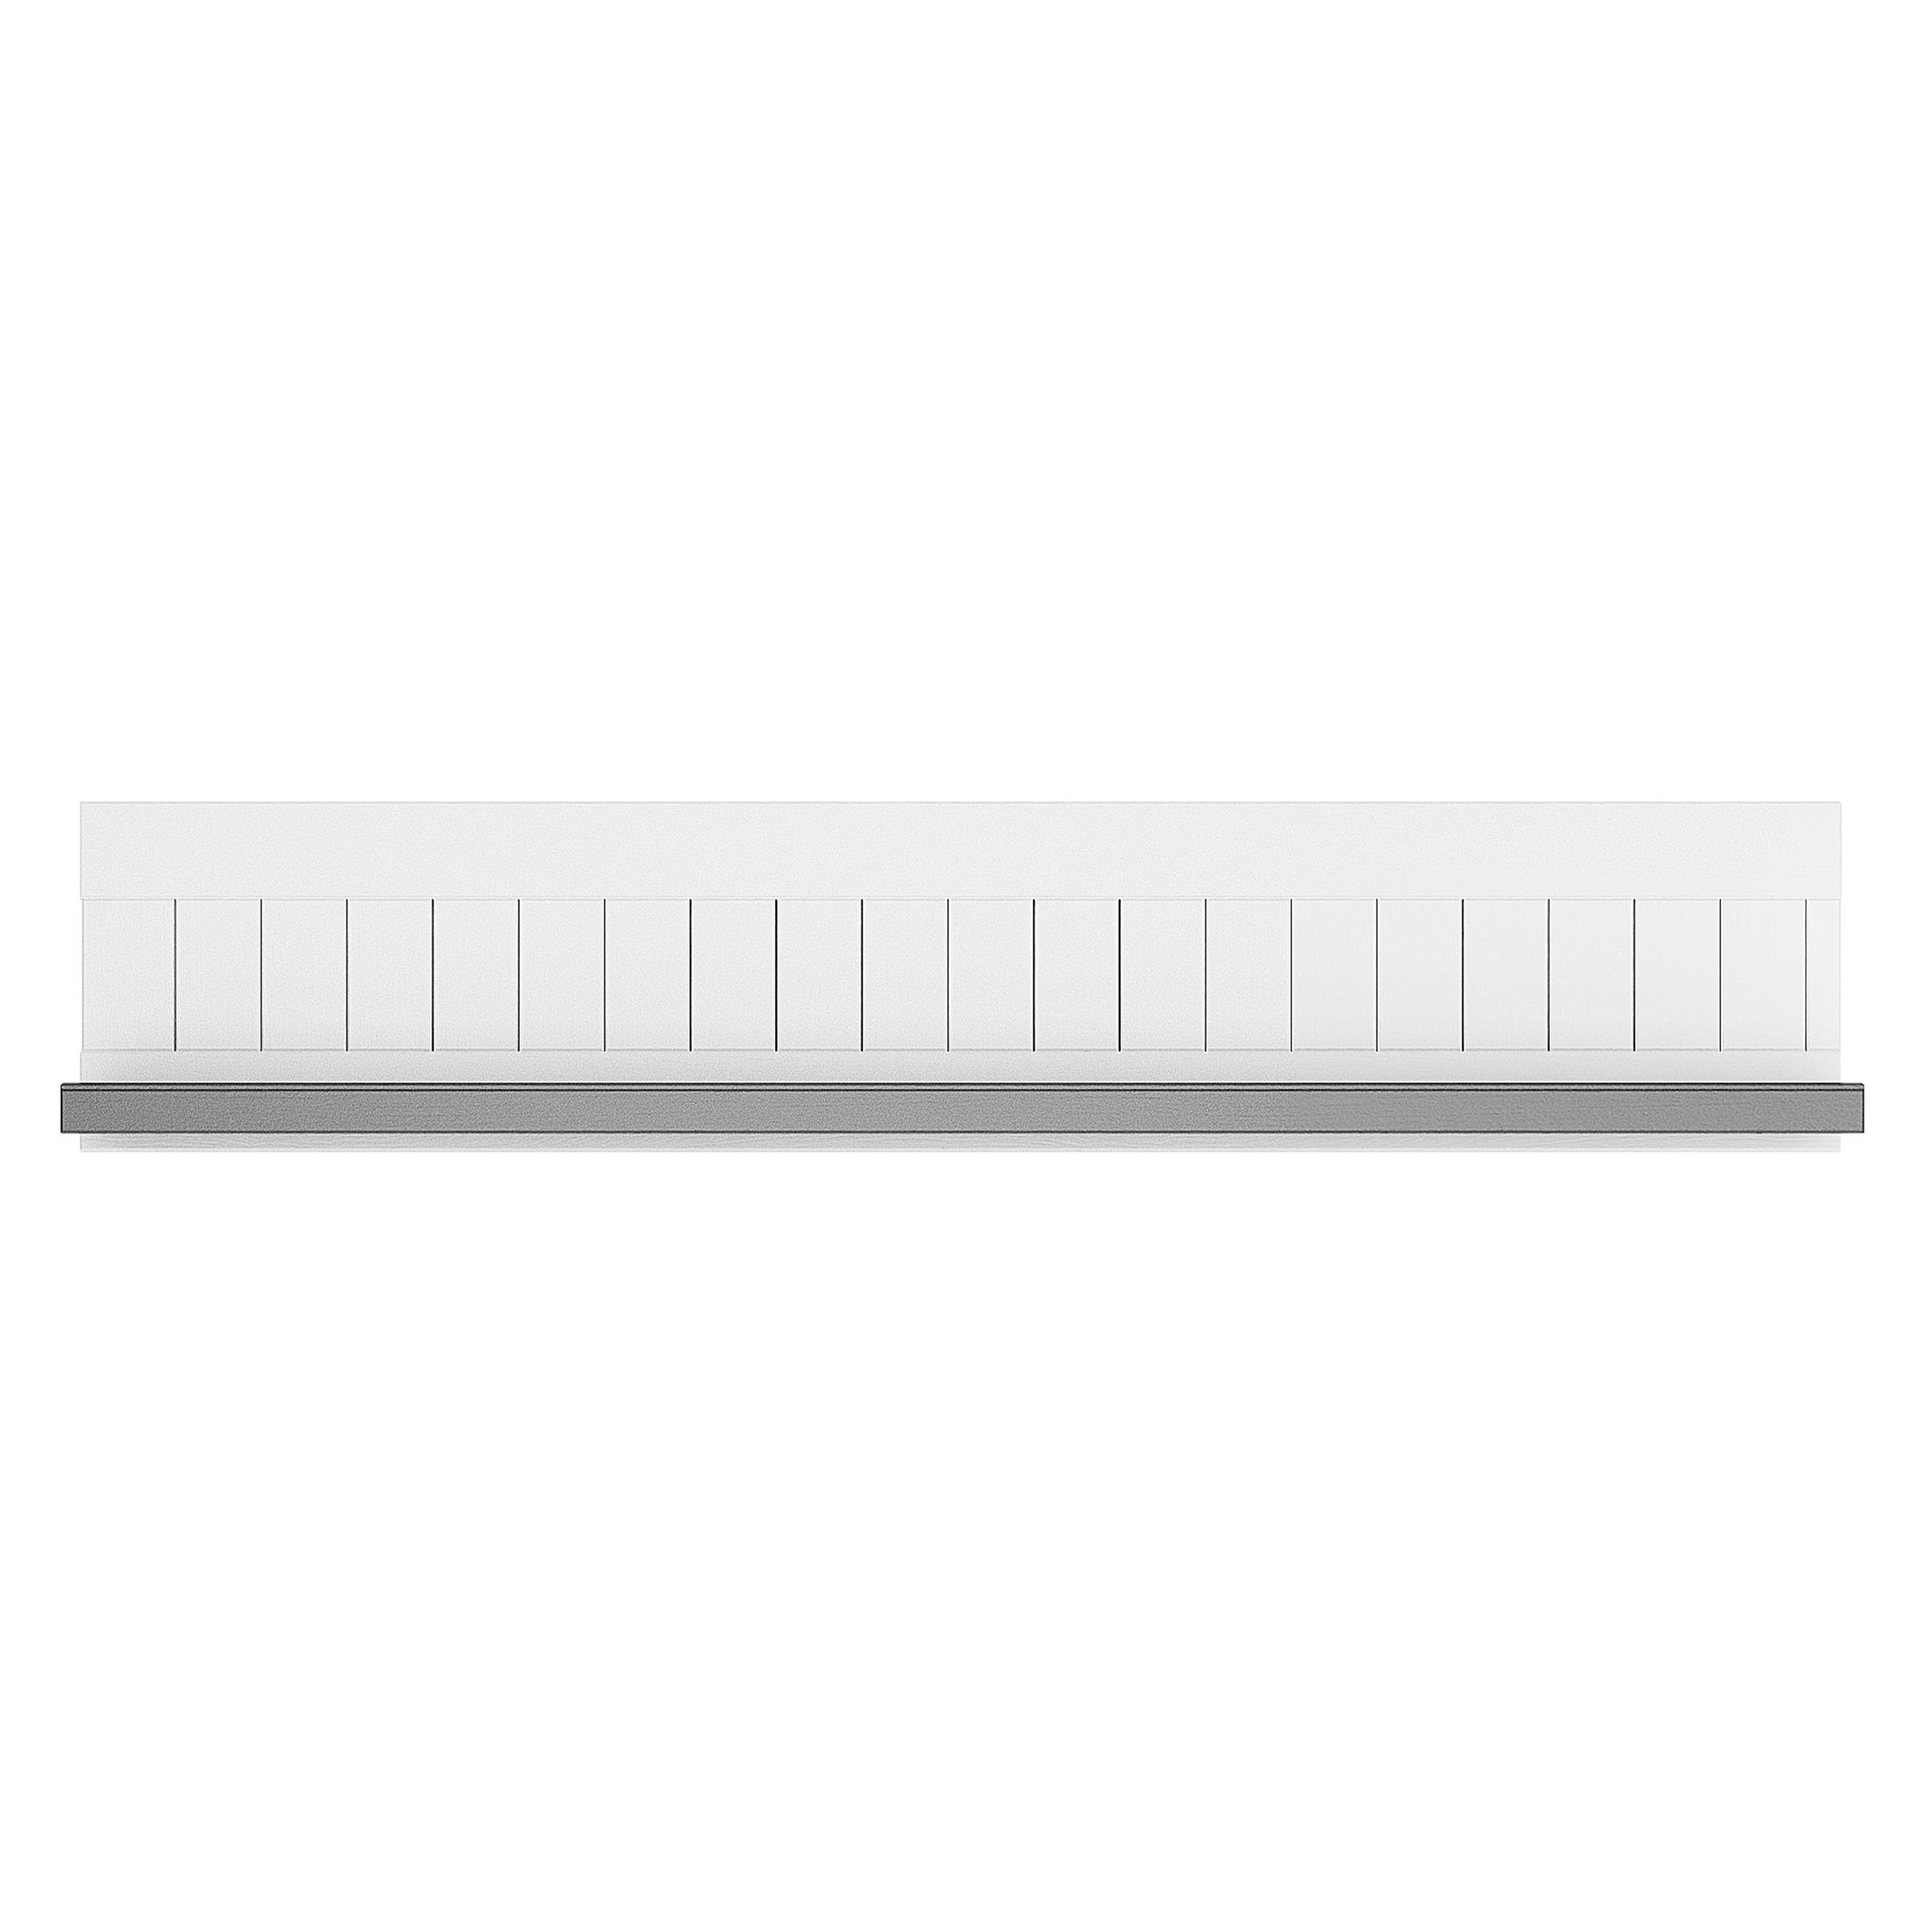 möbelando Wohnwand Miami 070-01 Wandboard, aus Holz in Weiß/Grau. Abmessungen (BxHxT) 130x28x23,7 cm | Wohnwände